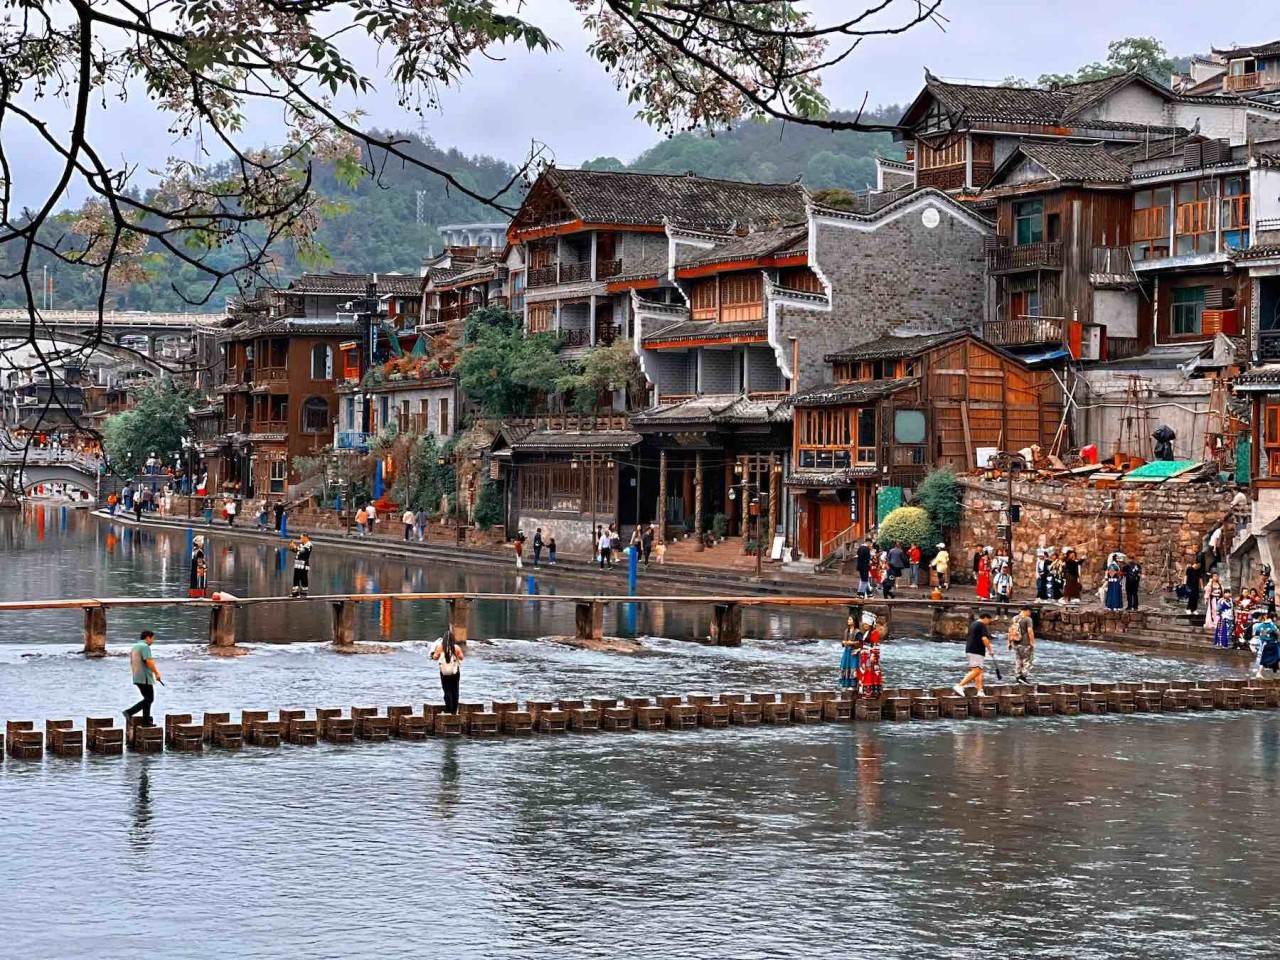 Phượng Hoàng cổ trấn nằm ở phía tây của tỉnh Hồ Nam. Đây là địa điểm thu hút khách Việt vì khoảng cách di chuyển không quá xa.